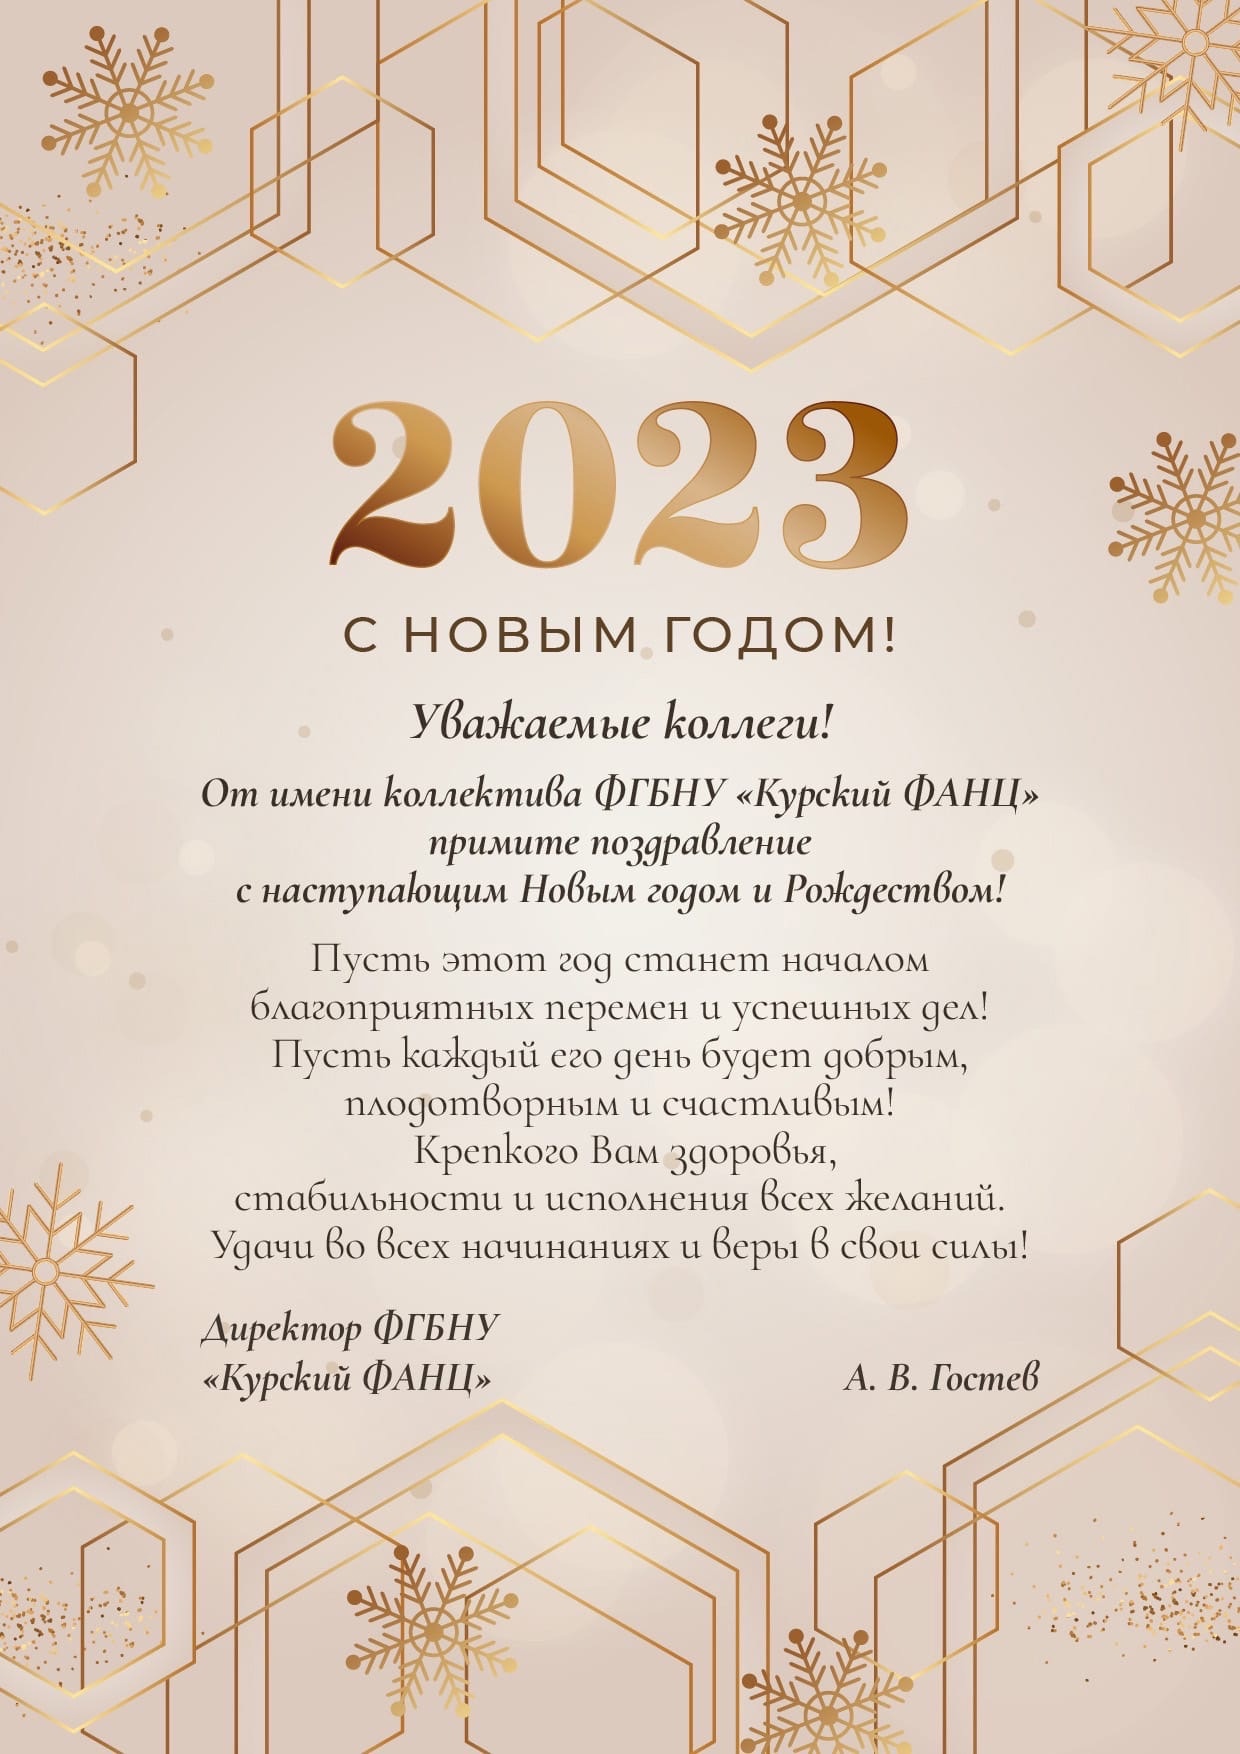 2023 поздравление открытка. Поздравить с новым годом 2023. Новогодние поздравления на 2023 год. Поздравить коллектив с новым годом 2023. Открытка с новым годом коллективу 2023.